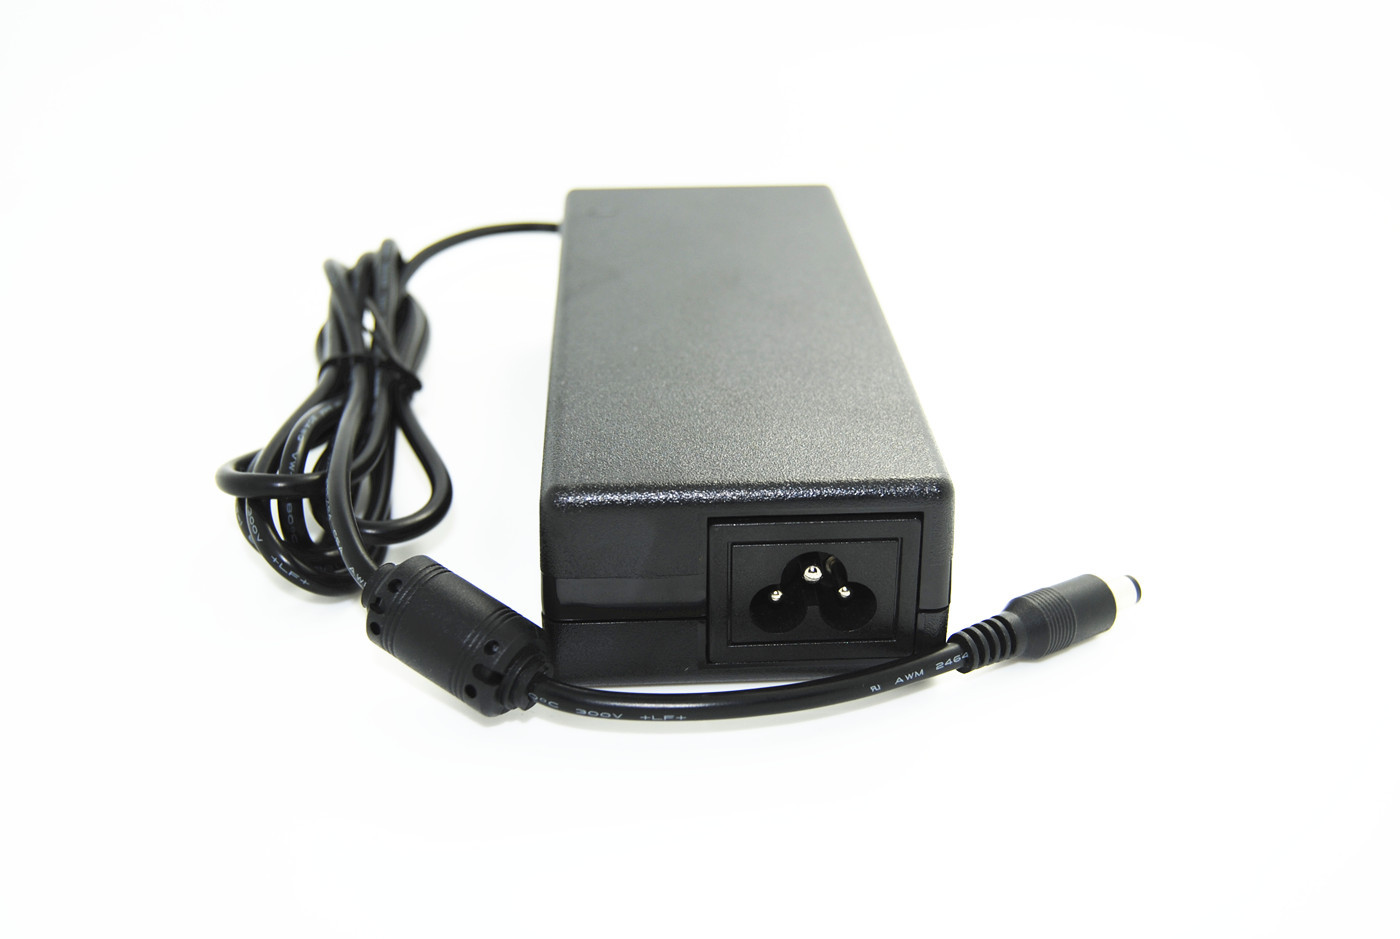 আইইসি / EN60950 আন্তর্জাতিক স্যুইচিং এসি / ডিসি CCTV ক্যামেরা পাওয়ার অ্যাডাপ্টার